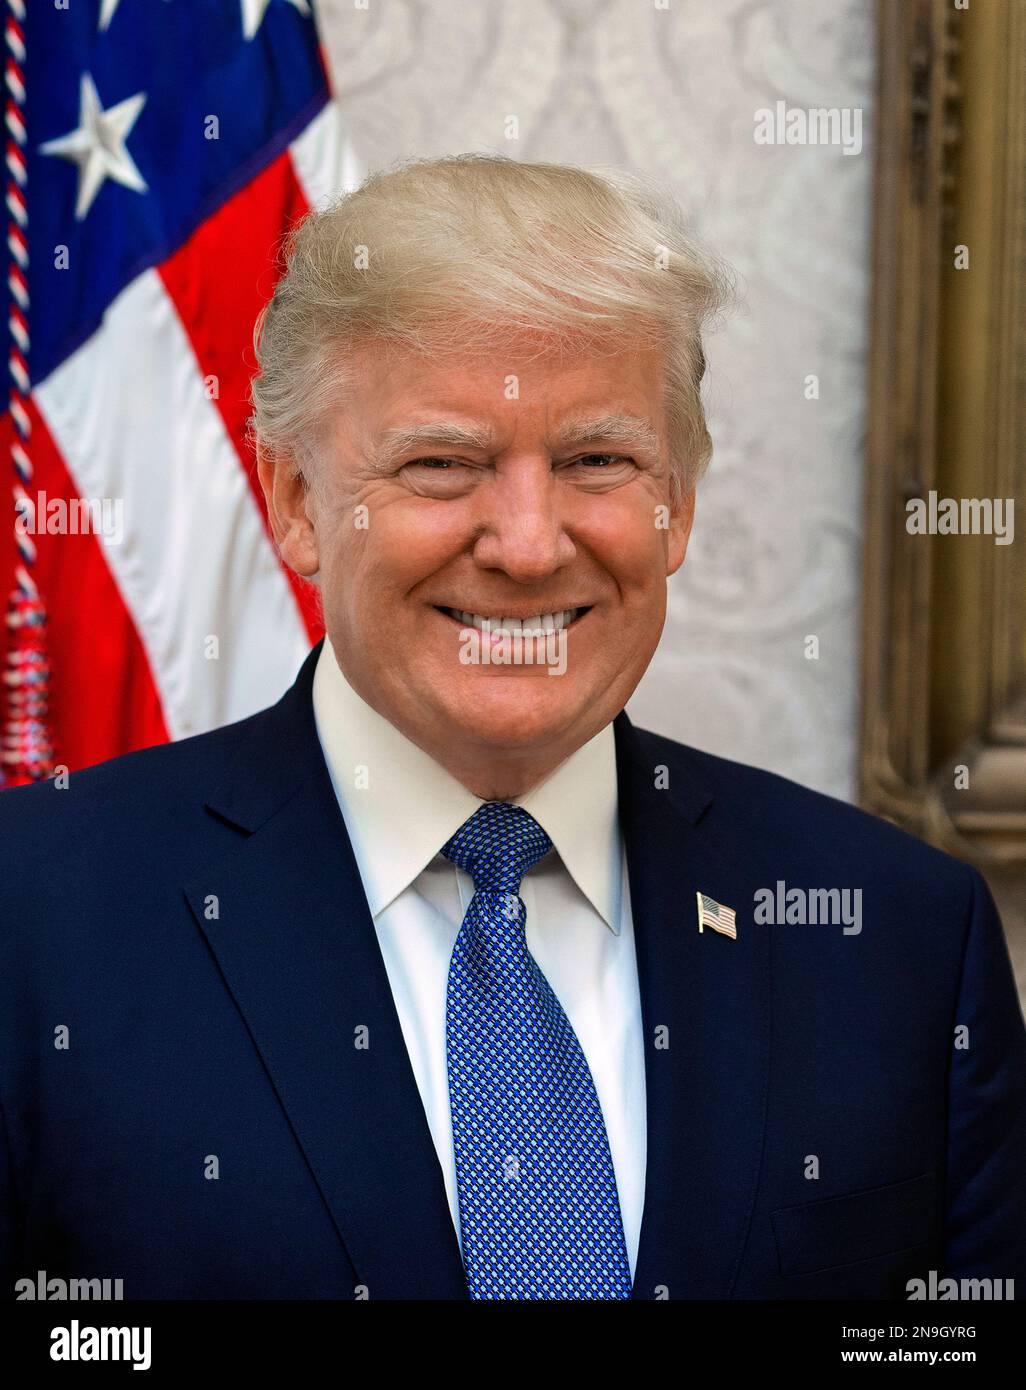 Président Donald Trump, Portrait officiel du président Donald J. Trump. Donald John Trump, homme politique américain, personnalité des médias et homme d'affaires qui a été président des États-Unis en 45th de 2017 à 2021. Banque D'Images